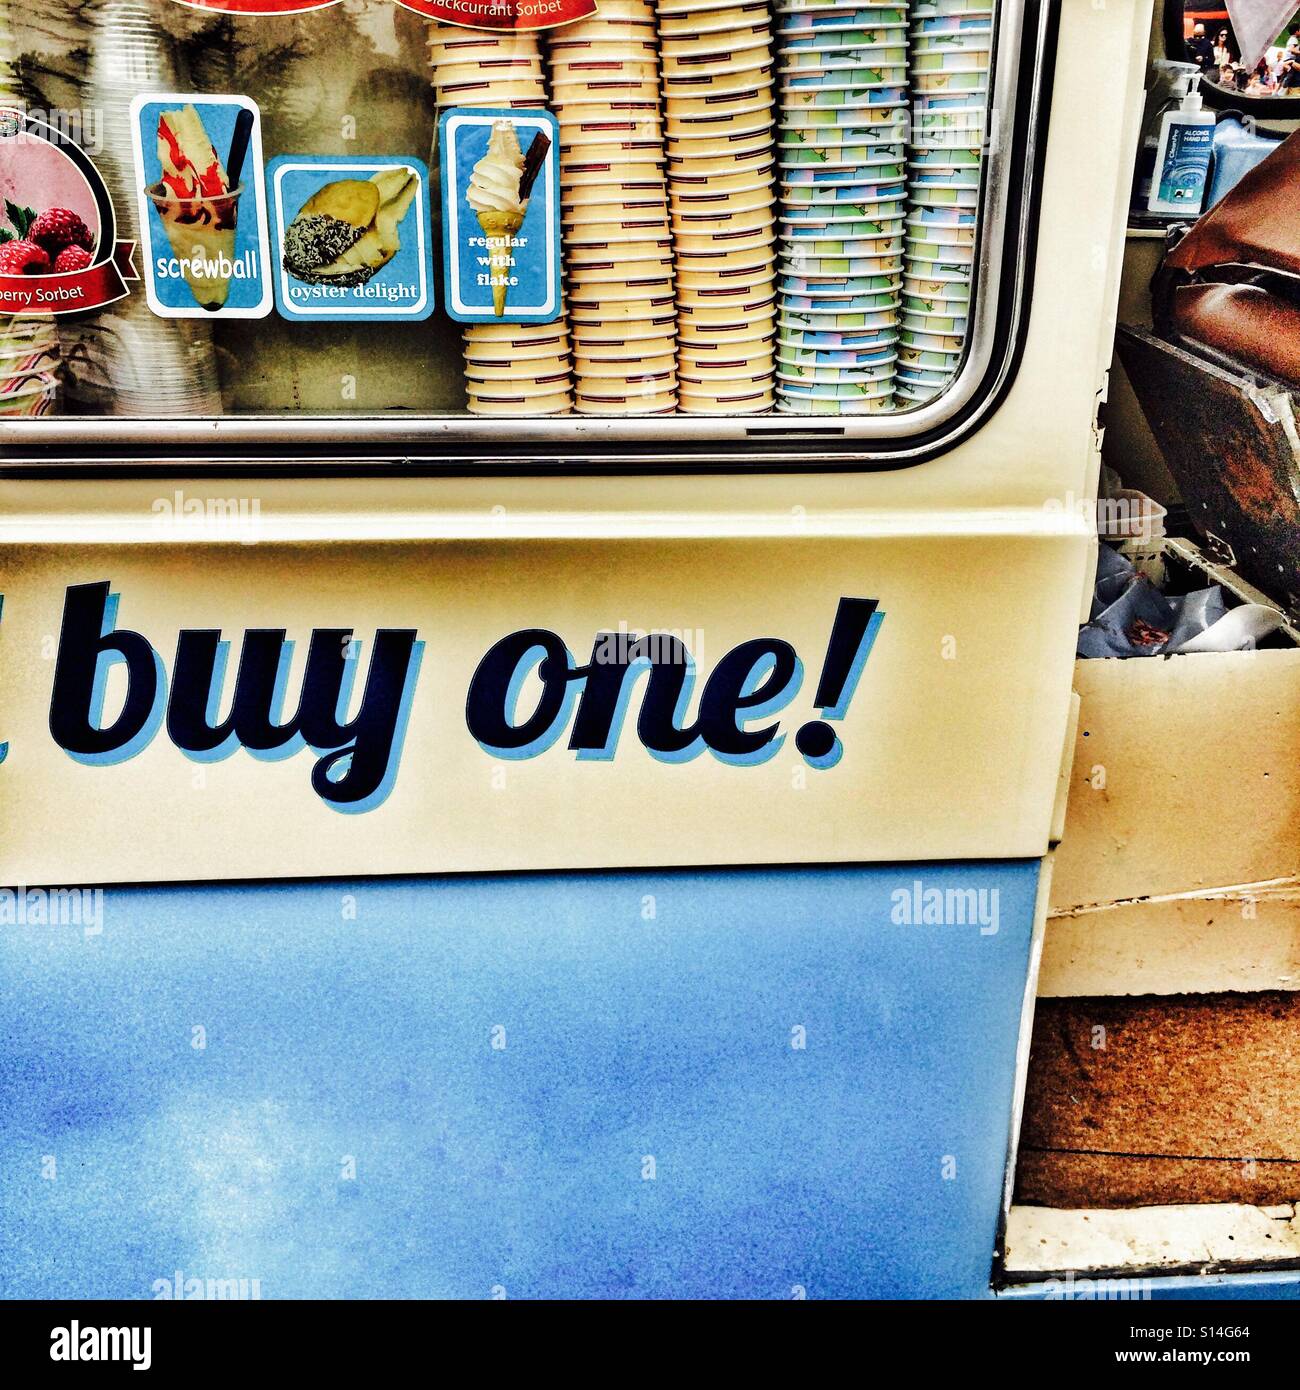 Buy One - Ice Cream Van Stock Photo